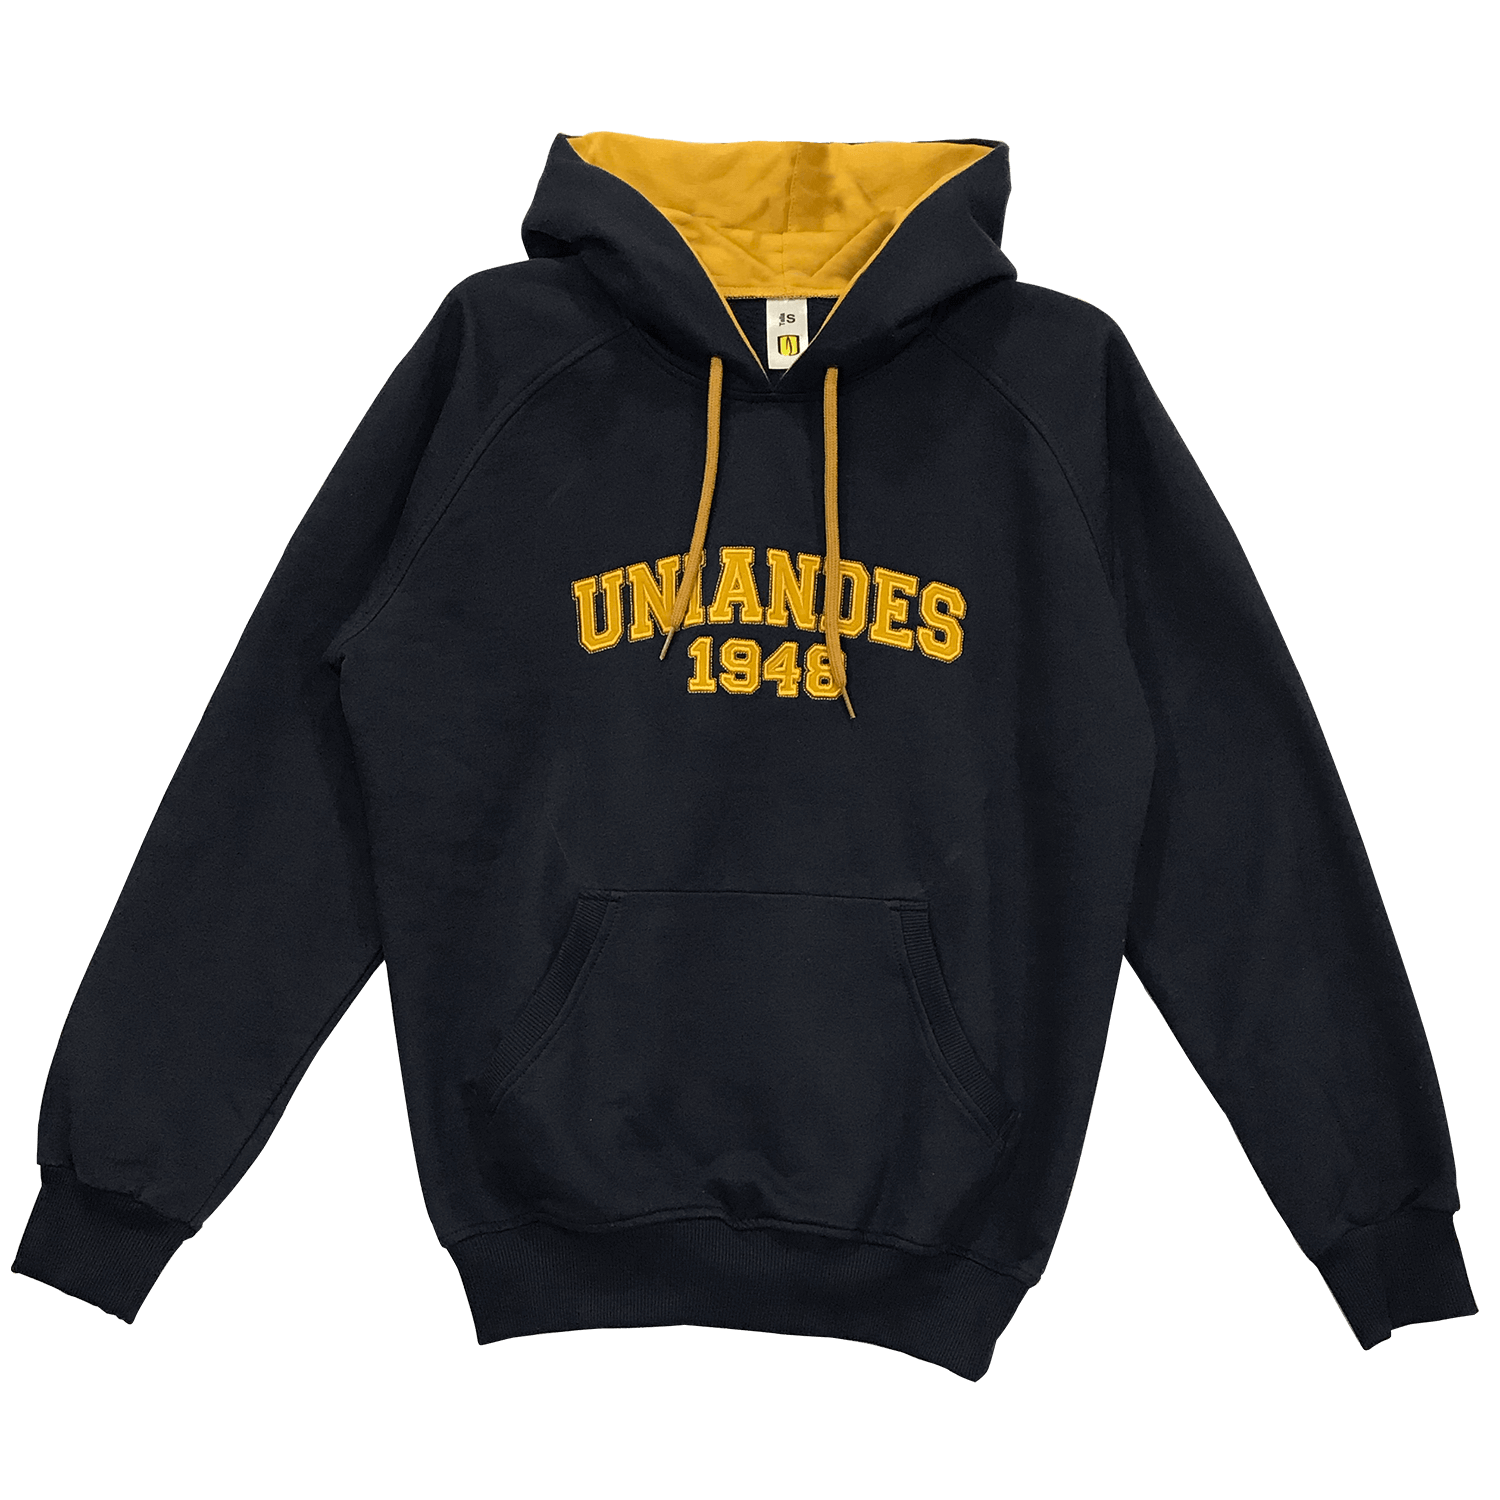 Buzos / hoodies en algodón perchado 100% nacional, en diferentes marcaciones como bordados o sublimación, diseños y estilo